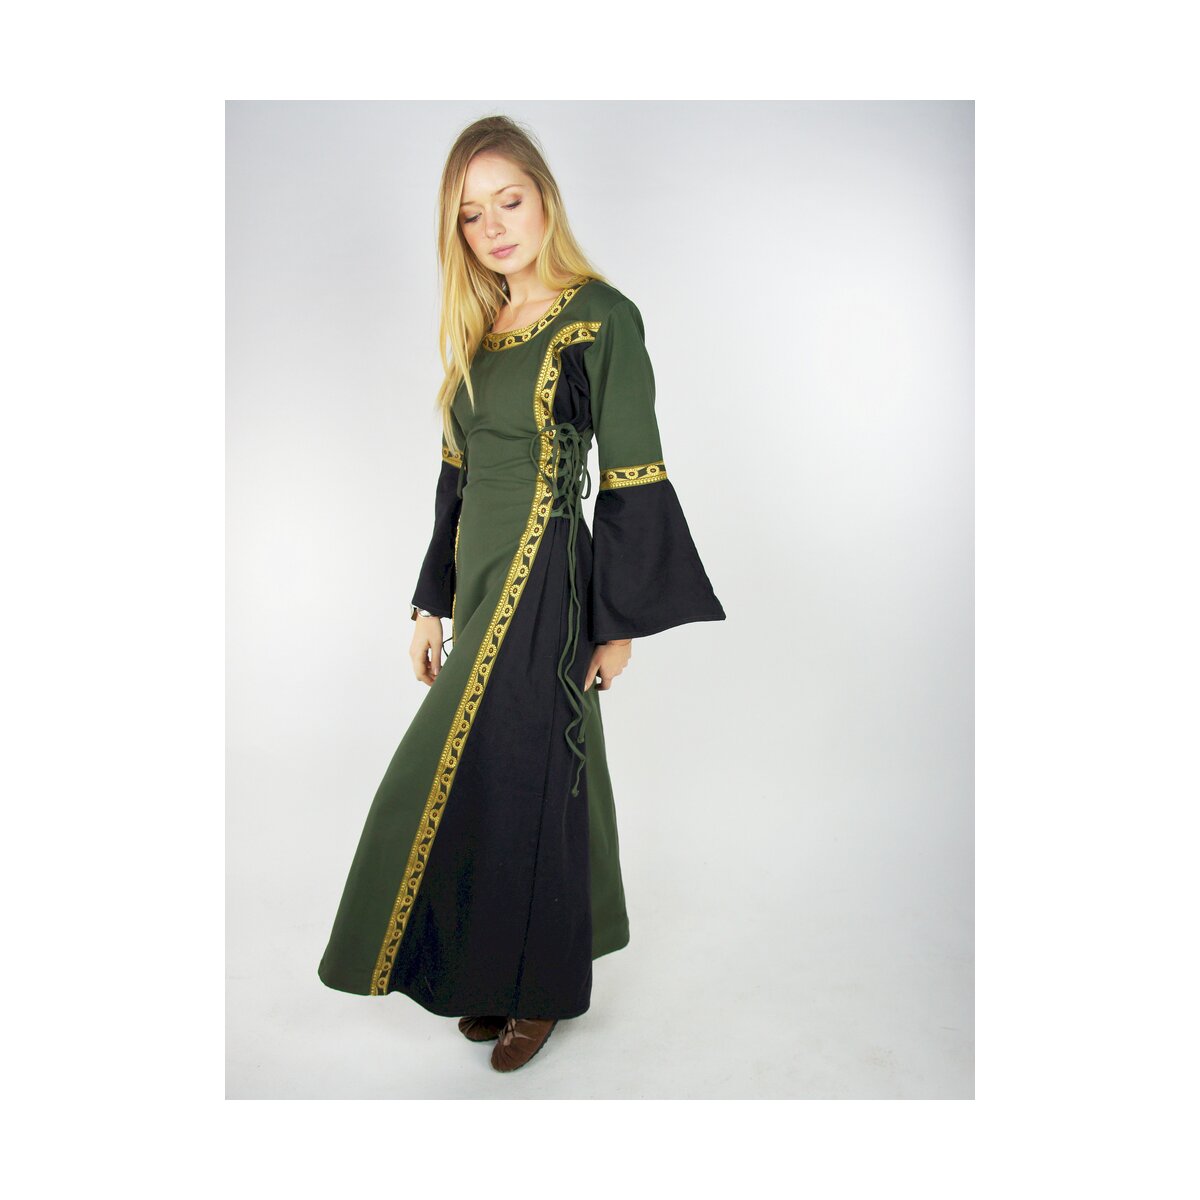 Mittelalterliches Kleid mit Bordüre...